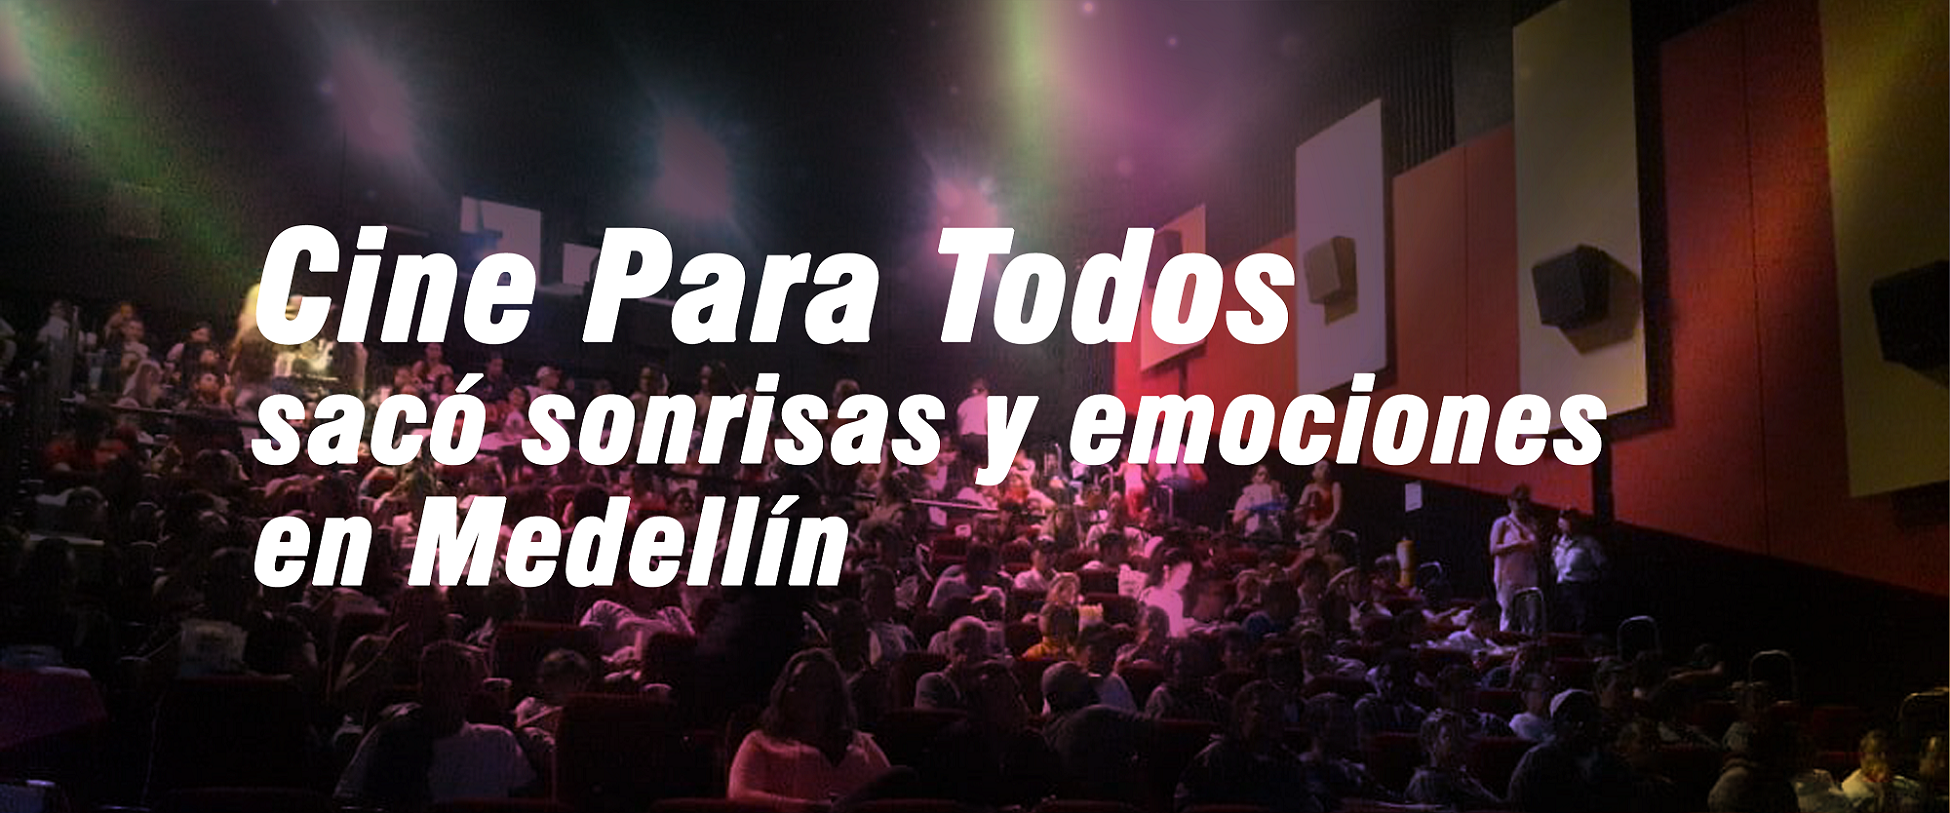 Cine Para Todos sacó sonrisas y emociones en Medellín